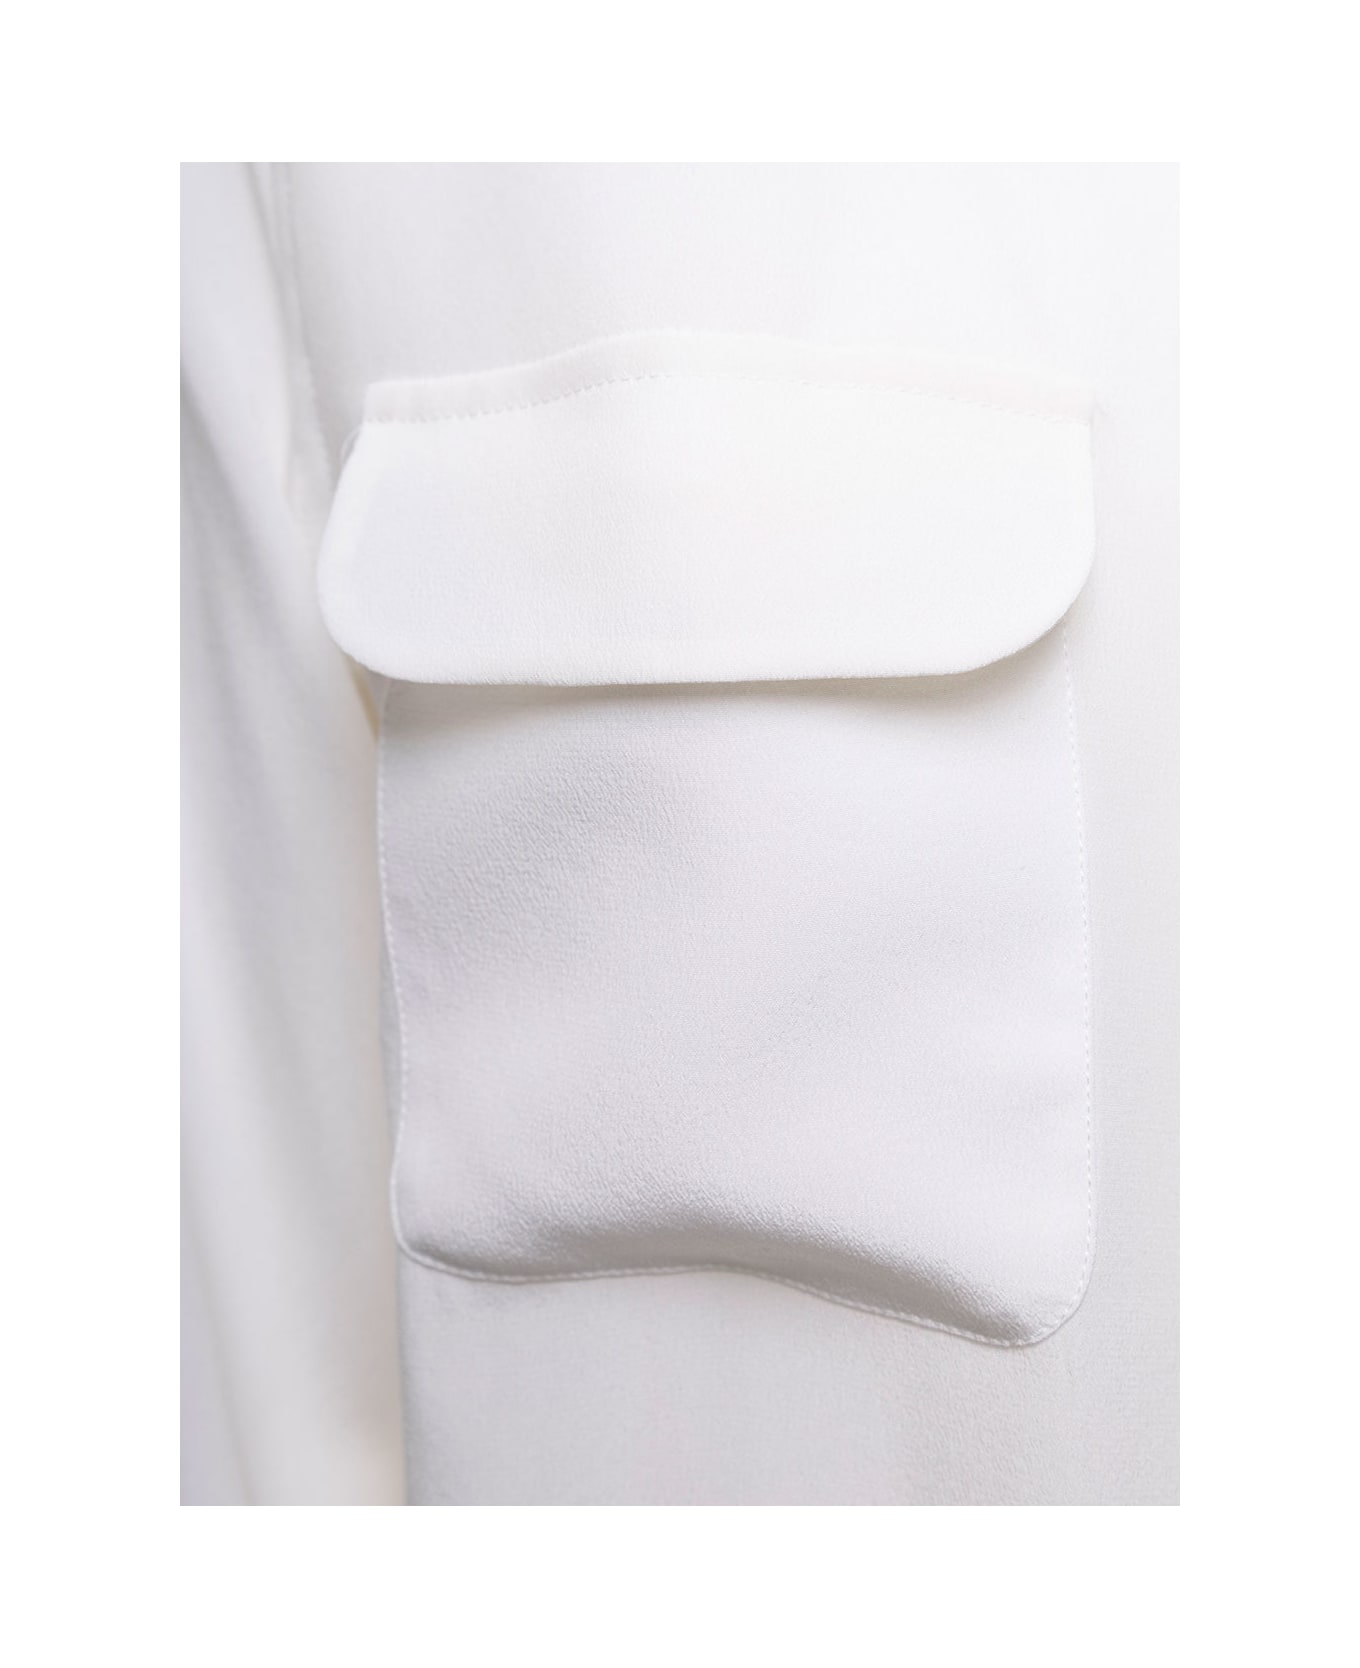 Equipment 'slim Signature' Silk White Shirt Woman - Bianco シャツ